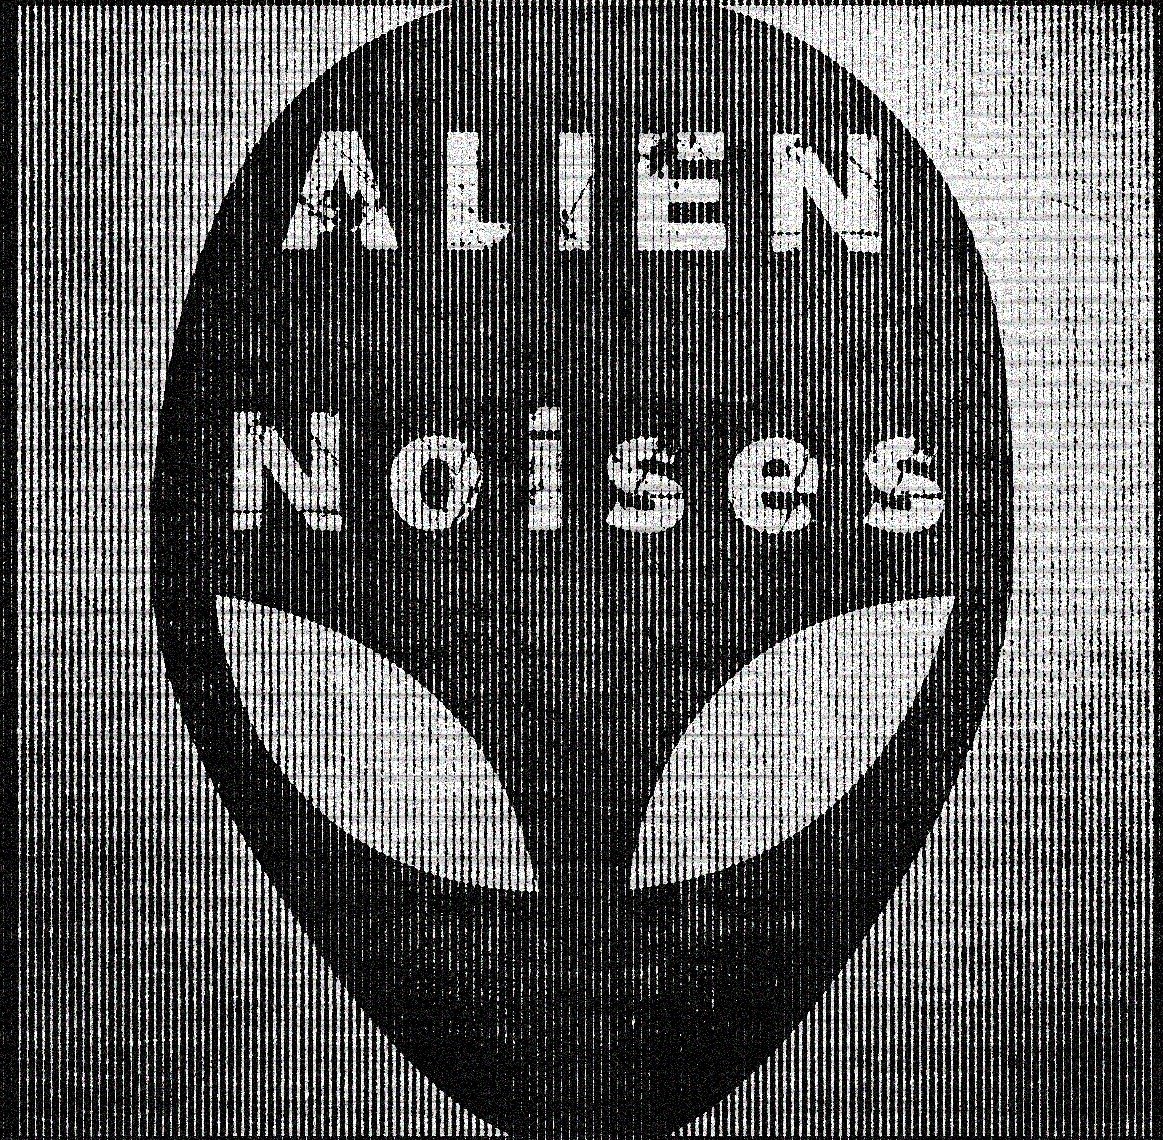 Alien Noises Art Square Fine Lines 1.jpg